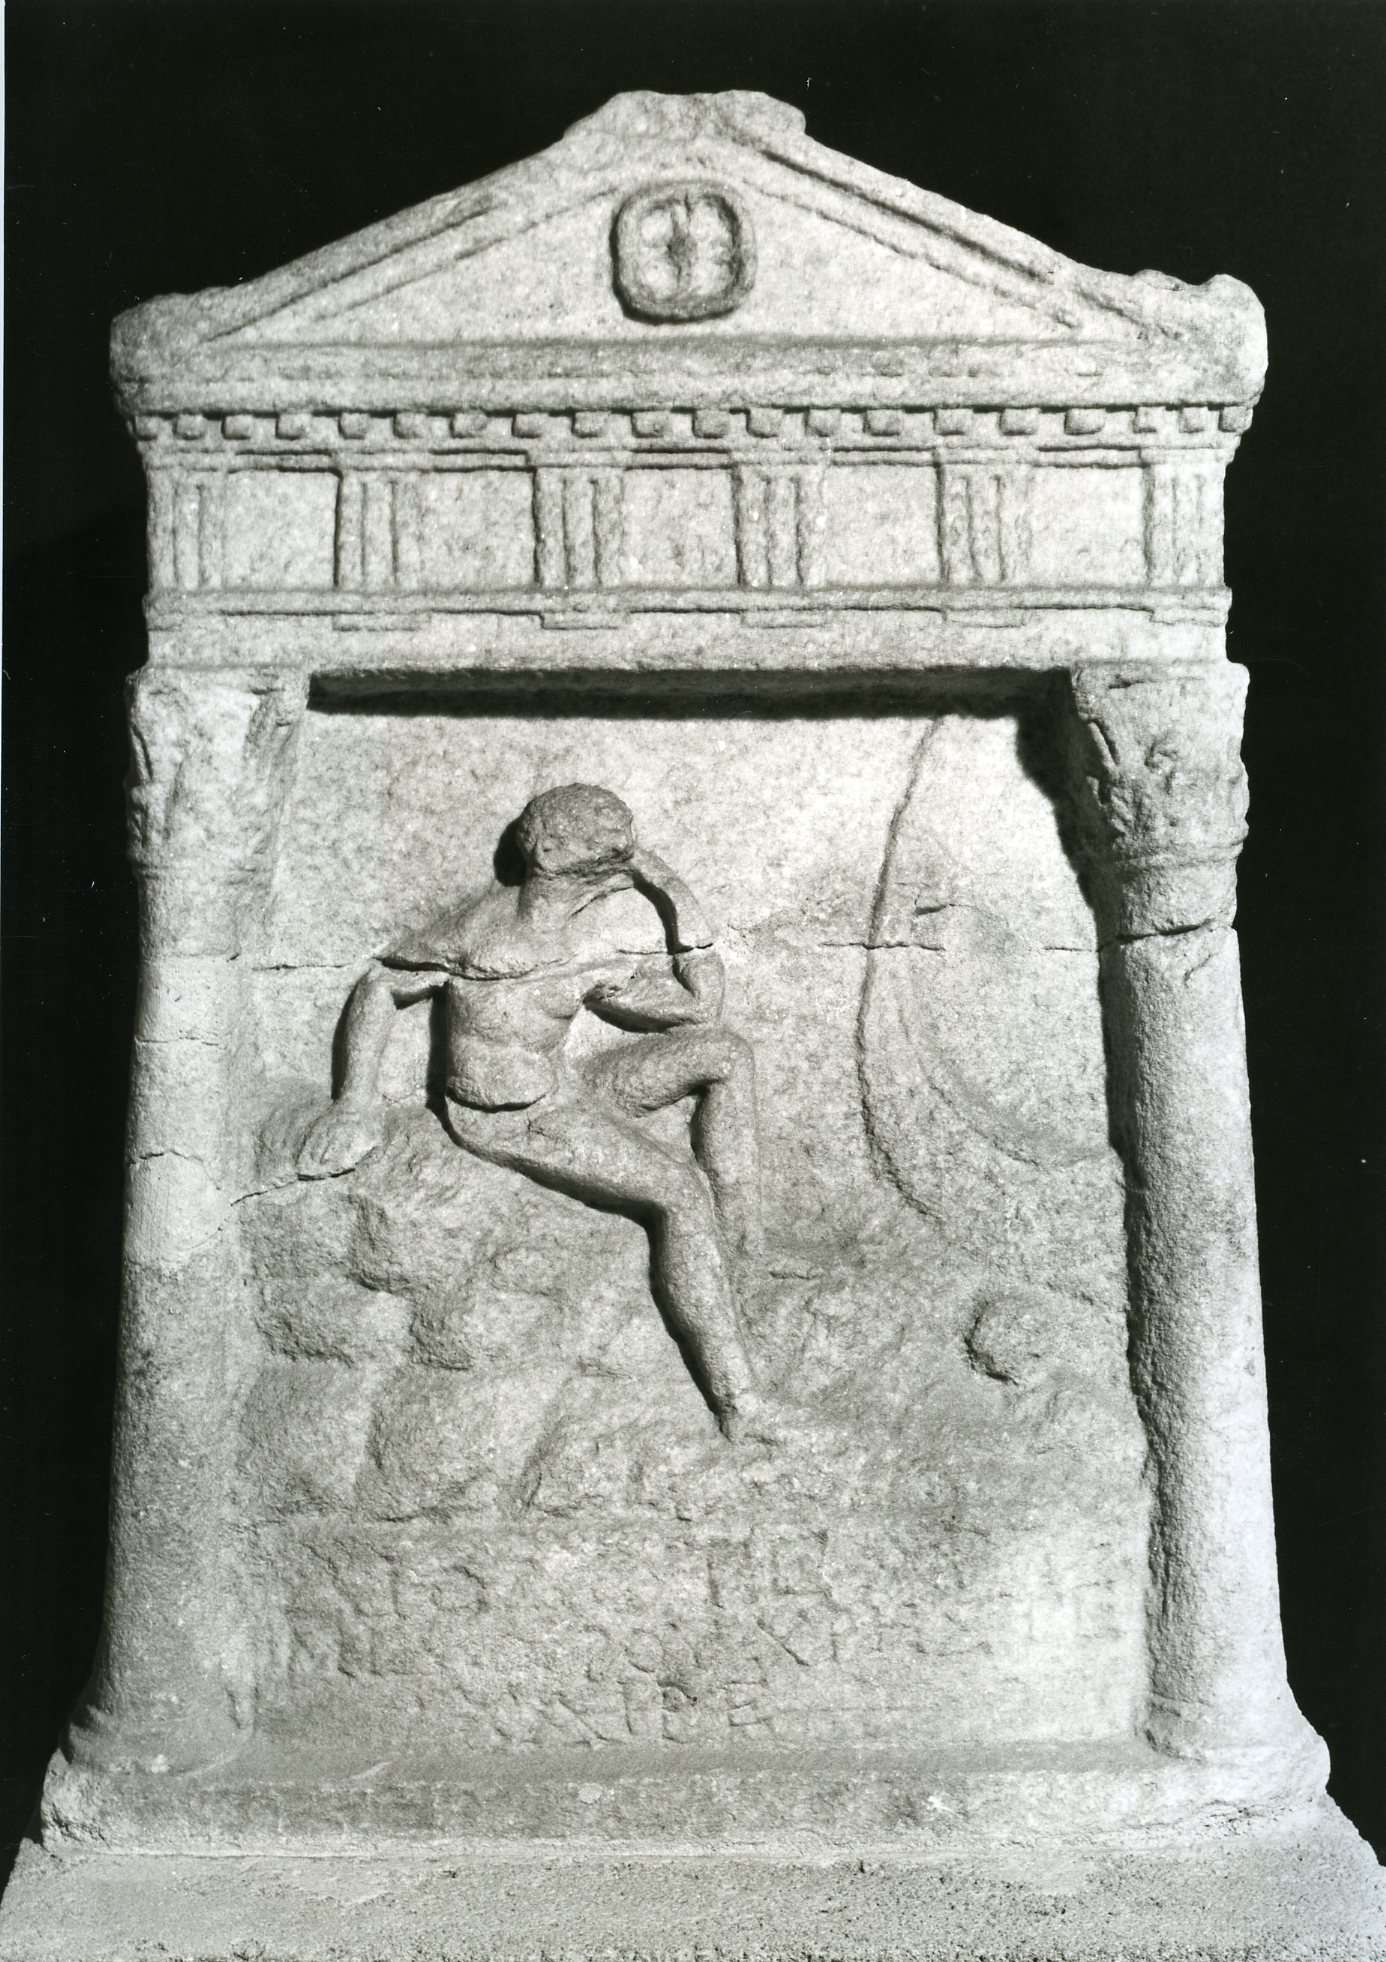 Headstone, c. 200–300 AD